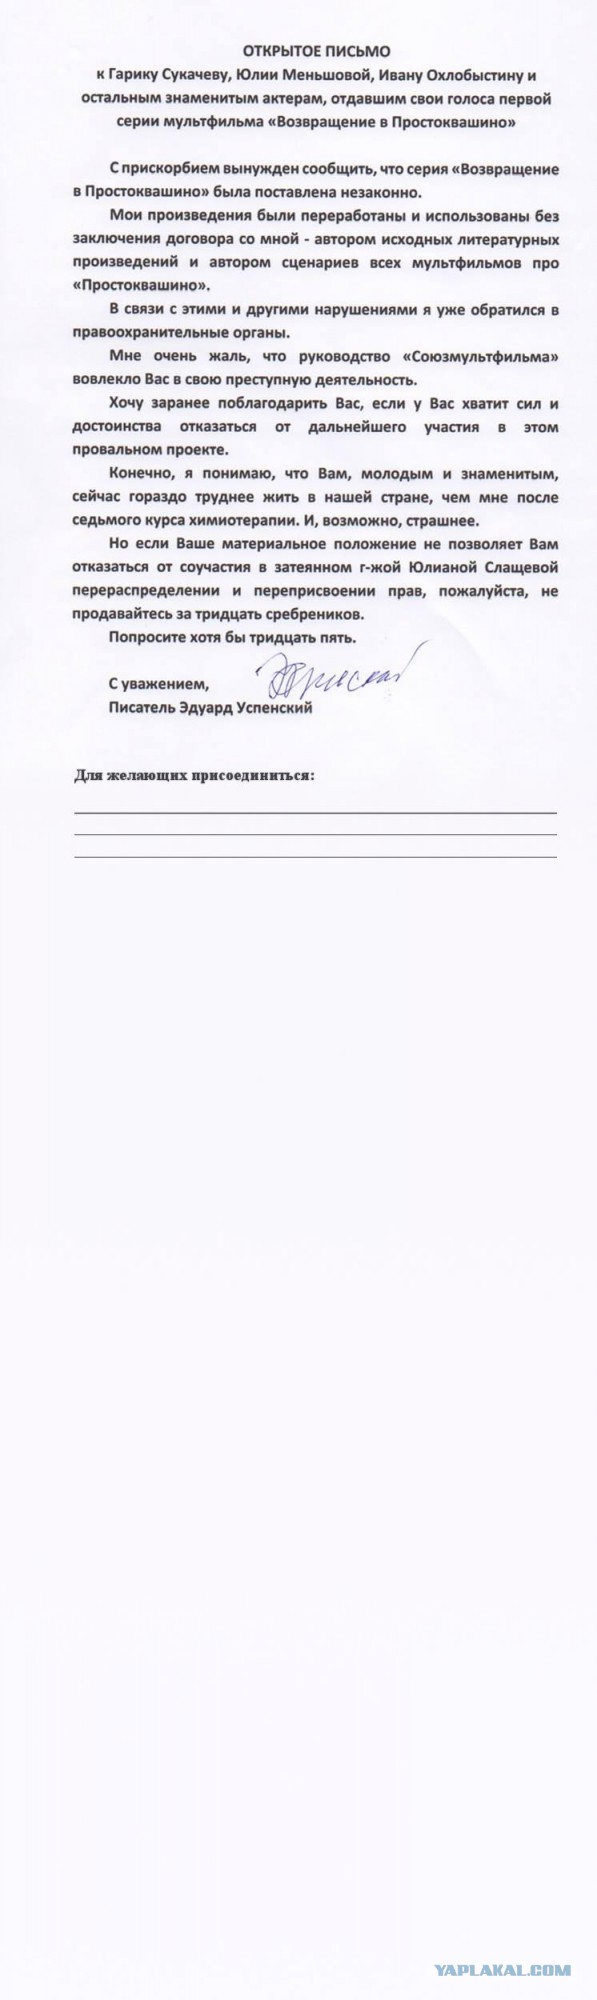 Успенский написал открытое письмо артистам - участникам создания "Возвращения в Простоквашино"